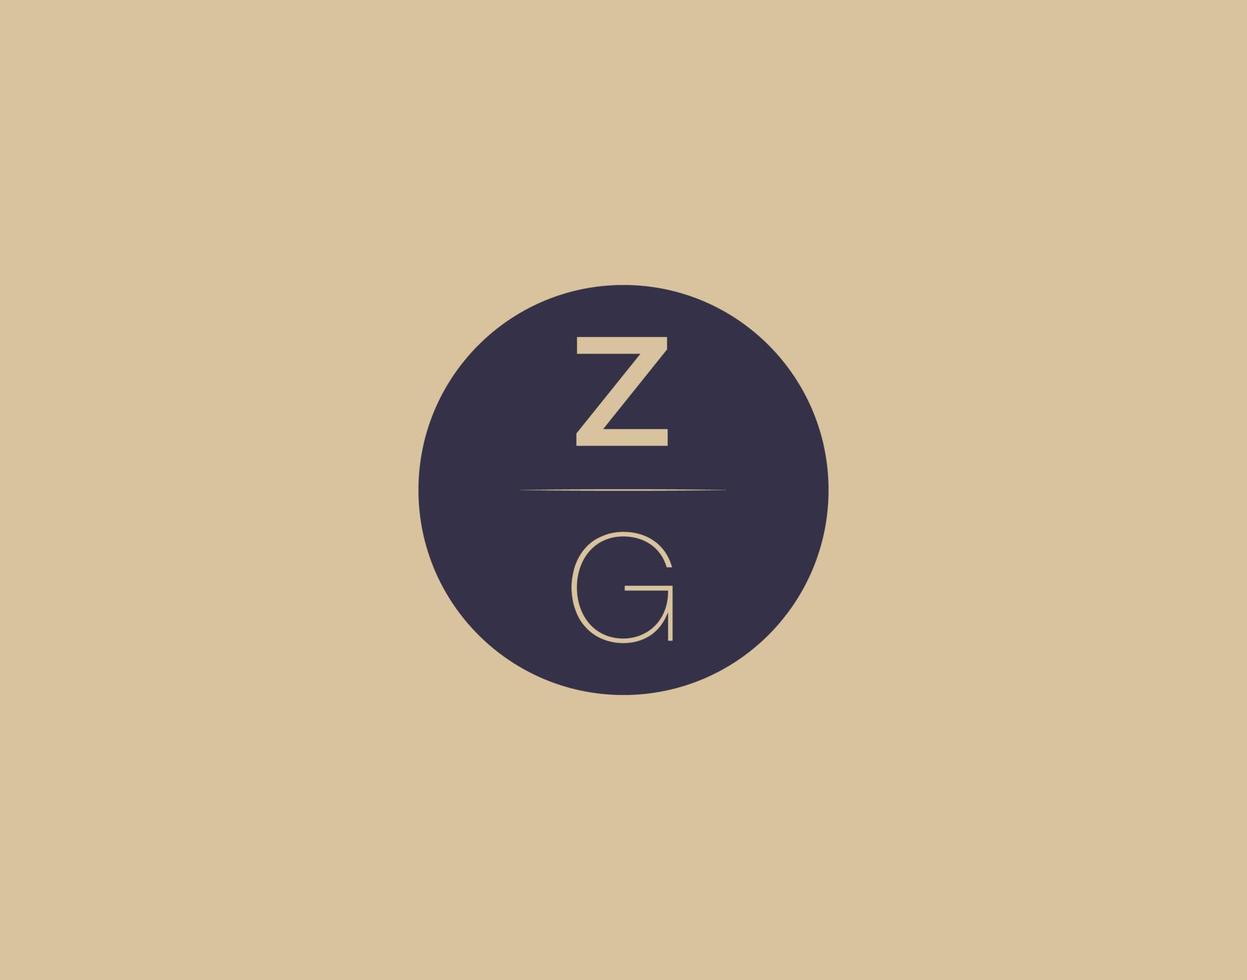 zg brief modern elegant logo ontwerp vector afbeeldingen